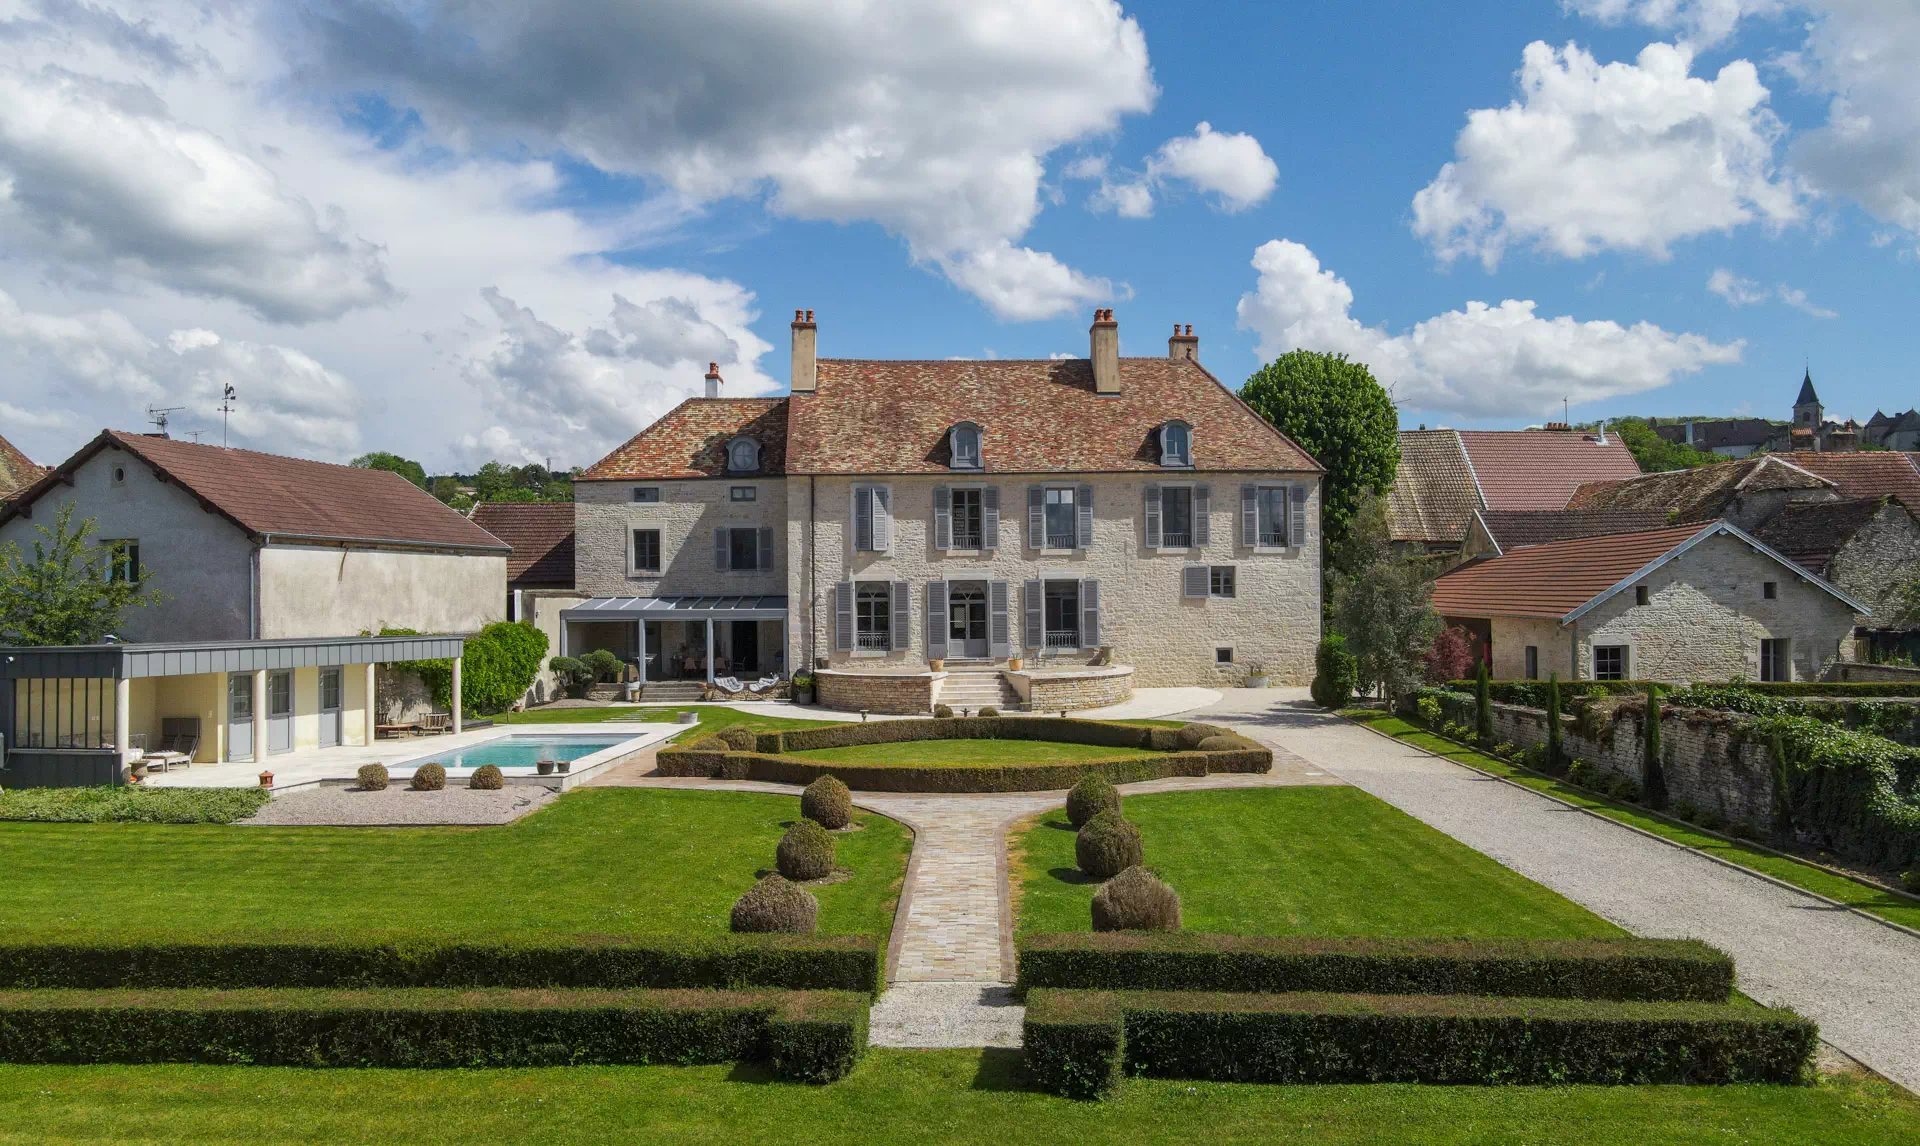 Immobilier d'exception en Haute-Saône- Arrière-Cour, agence immobilière spécialisée en Bourgogne Franche-Comté